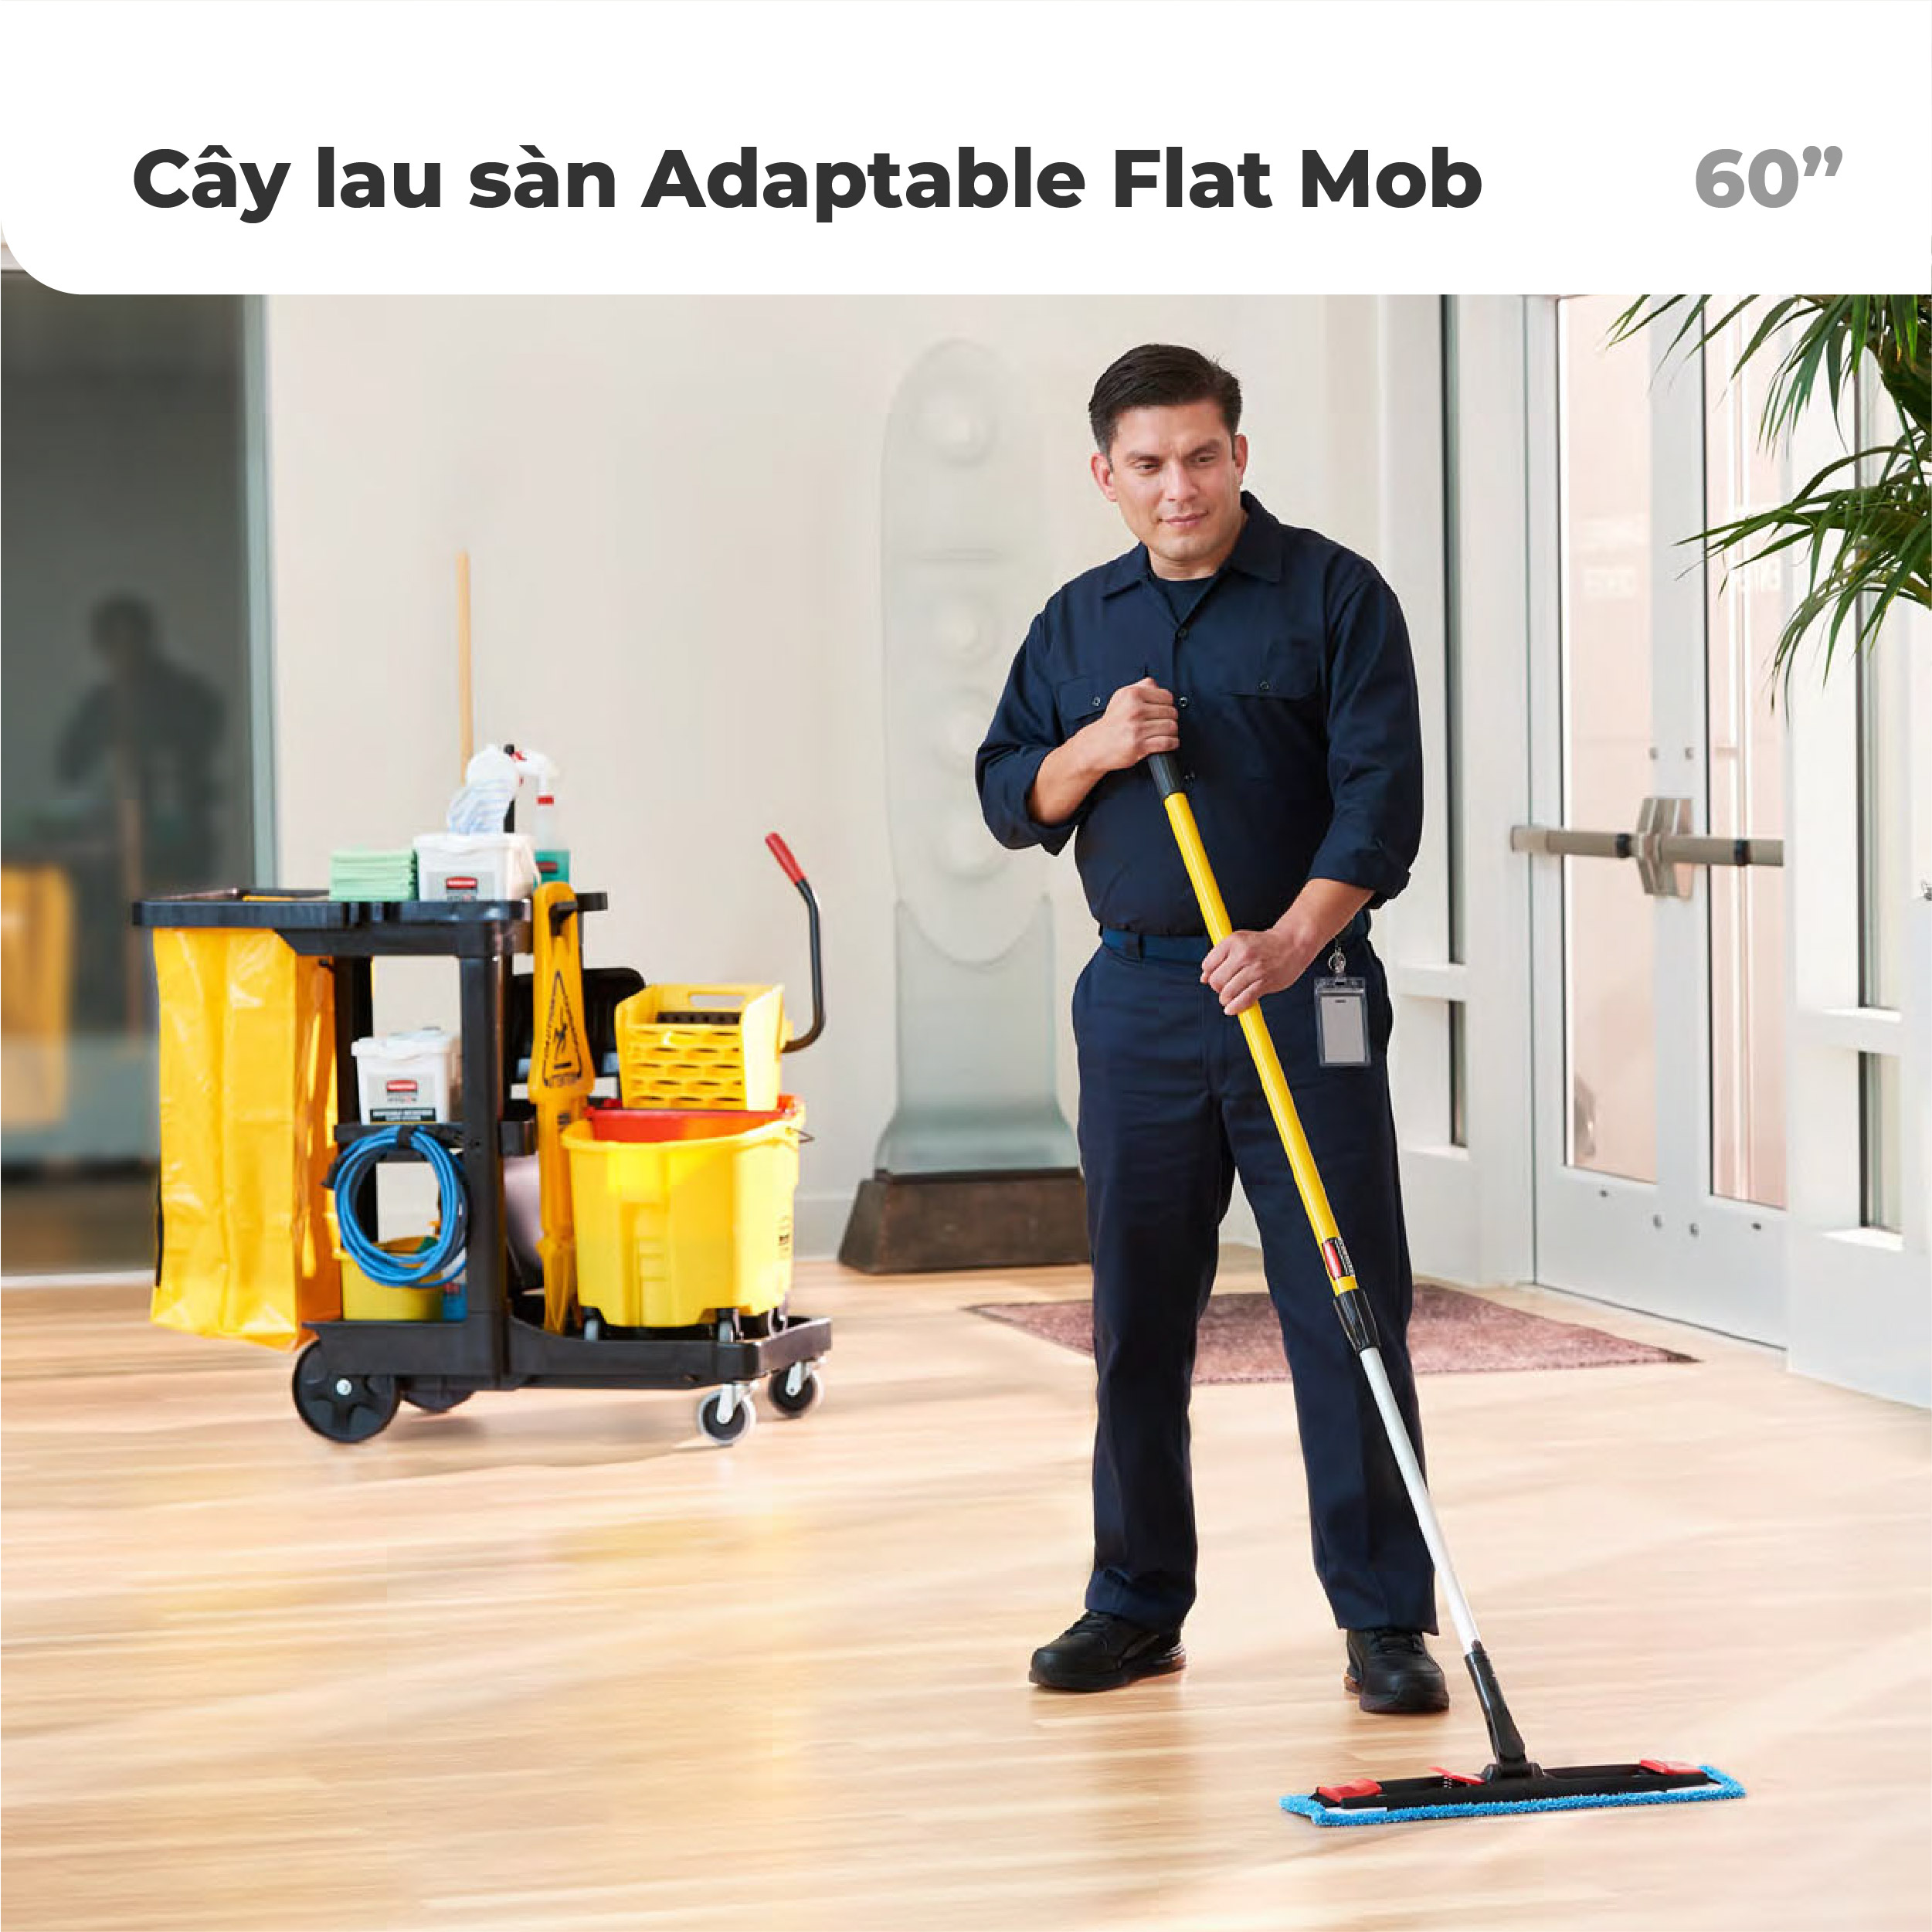 Bộ cây lau sàn thông minh Adaptable Flat Mob Rubbermaid - SKU: 2132426 | SAOVIETCO